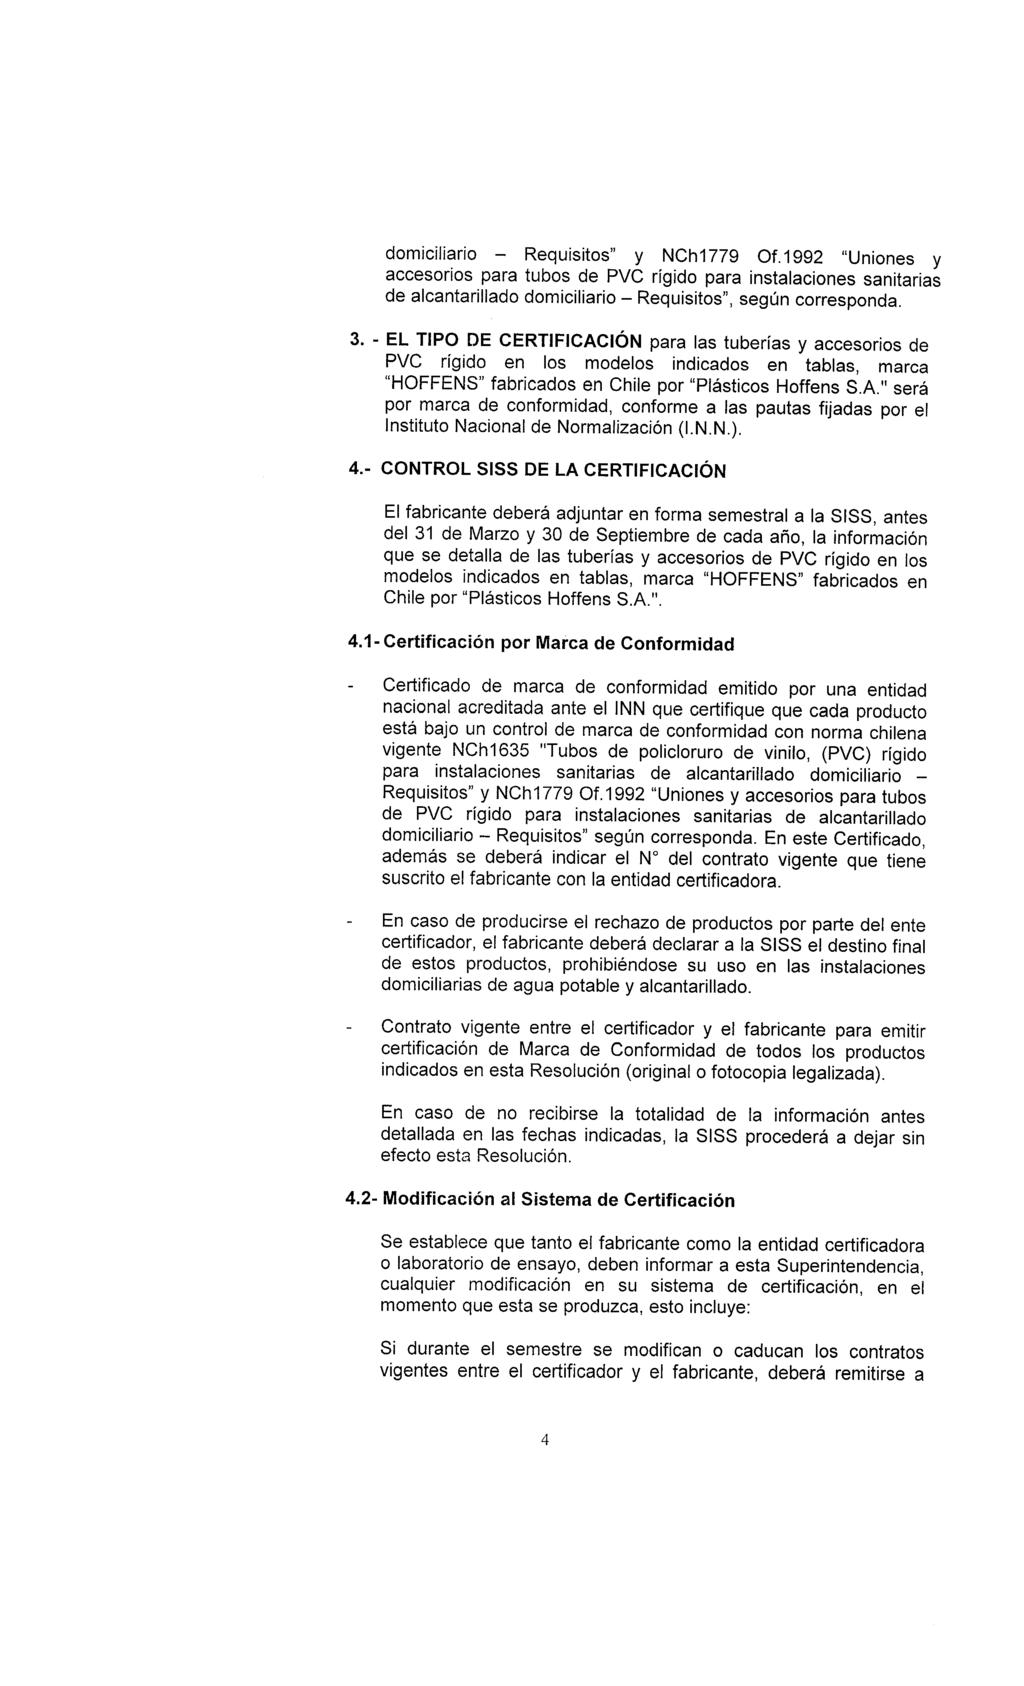 domiciliario - Requisitos" y NCM779 Of.1992 "Uniones y accesorios para tubos de PVC rígido para instalaciones sanitarias de alcantarillado domiciliario - Requisitos", según corresponda. 3.